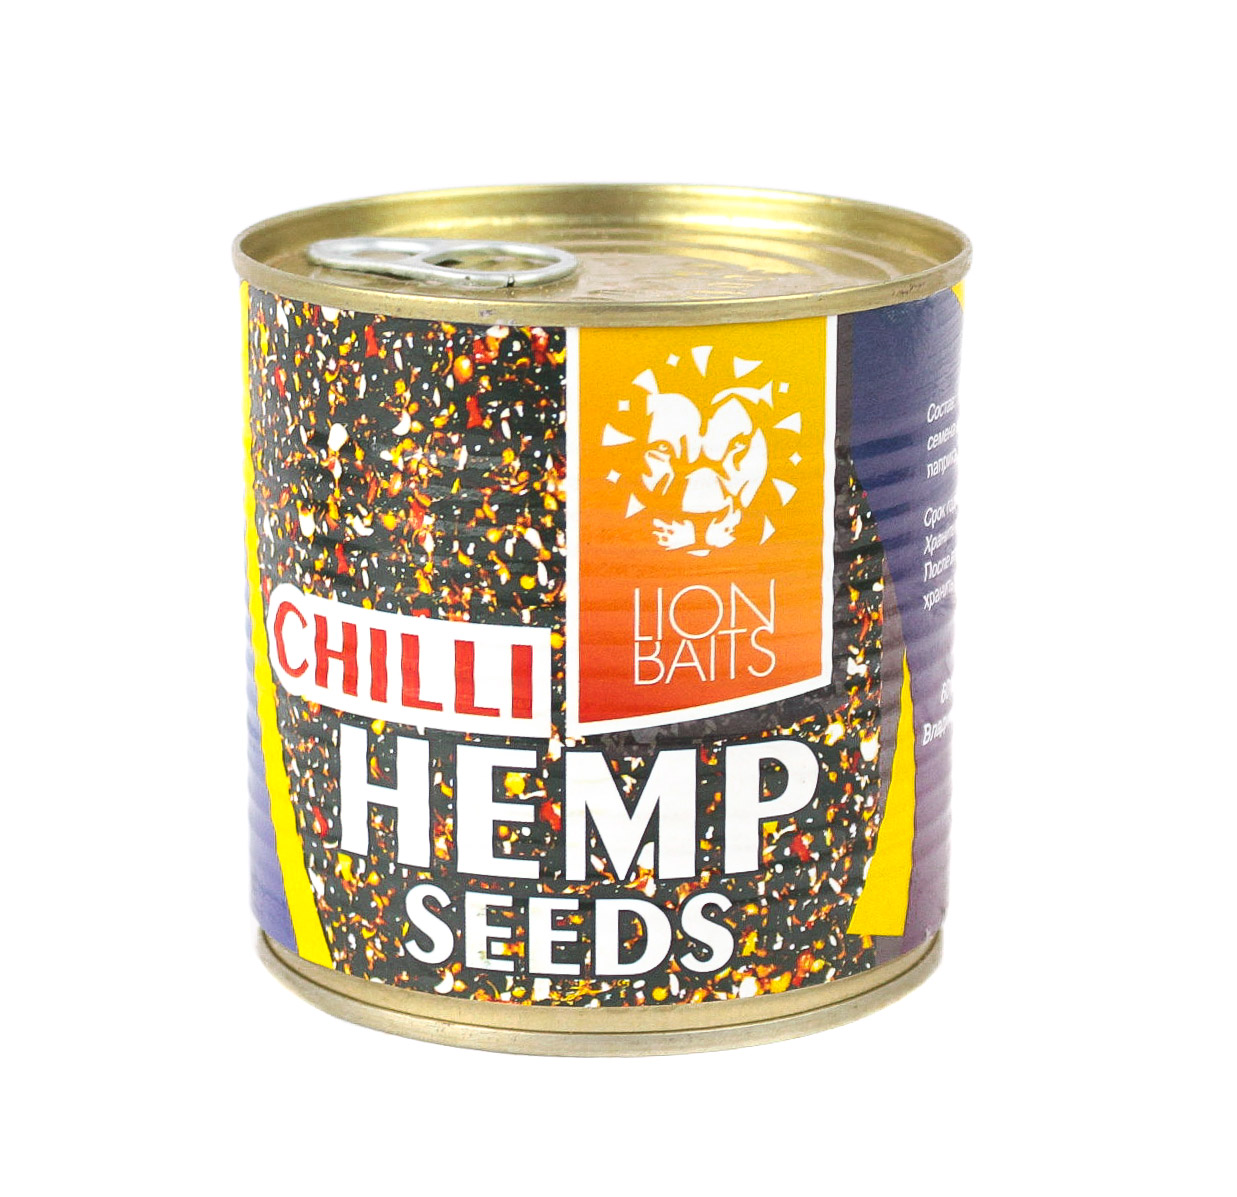 Консервированная зерновая смесь Lion Baits hemp seeds chili 430мл